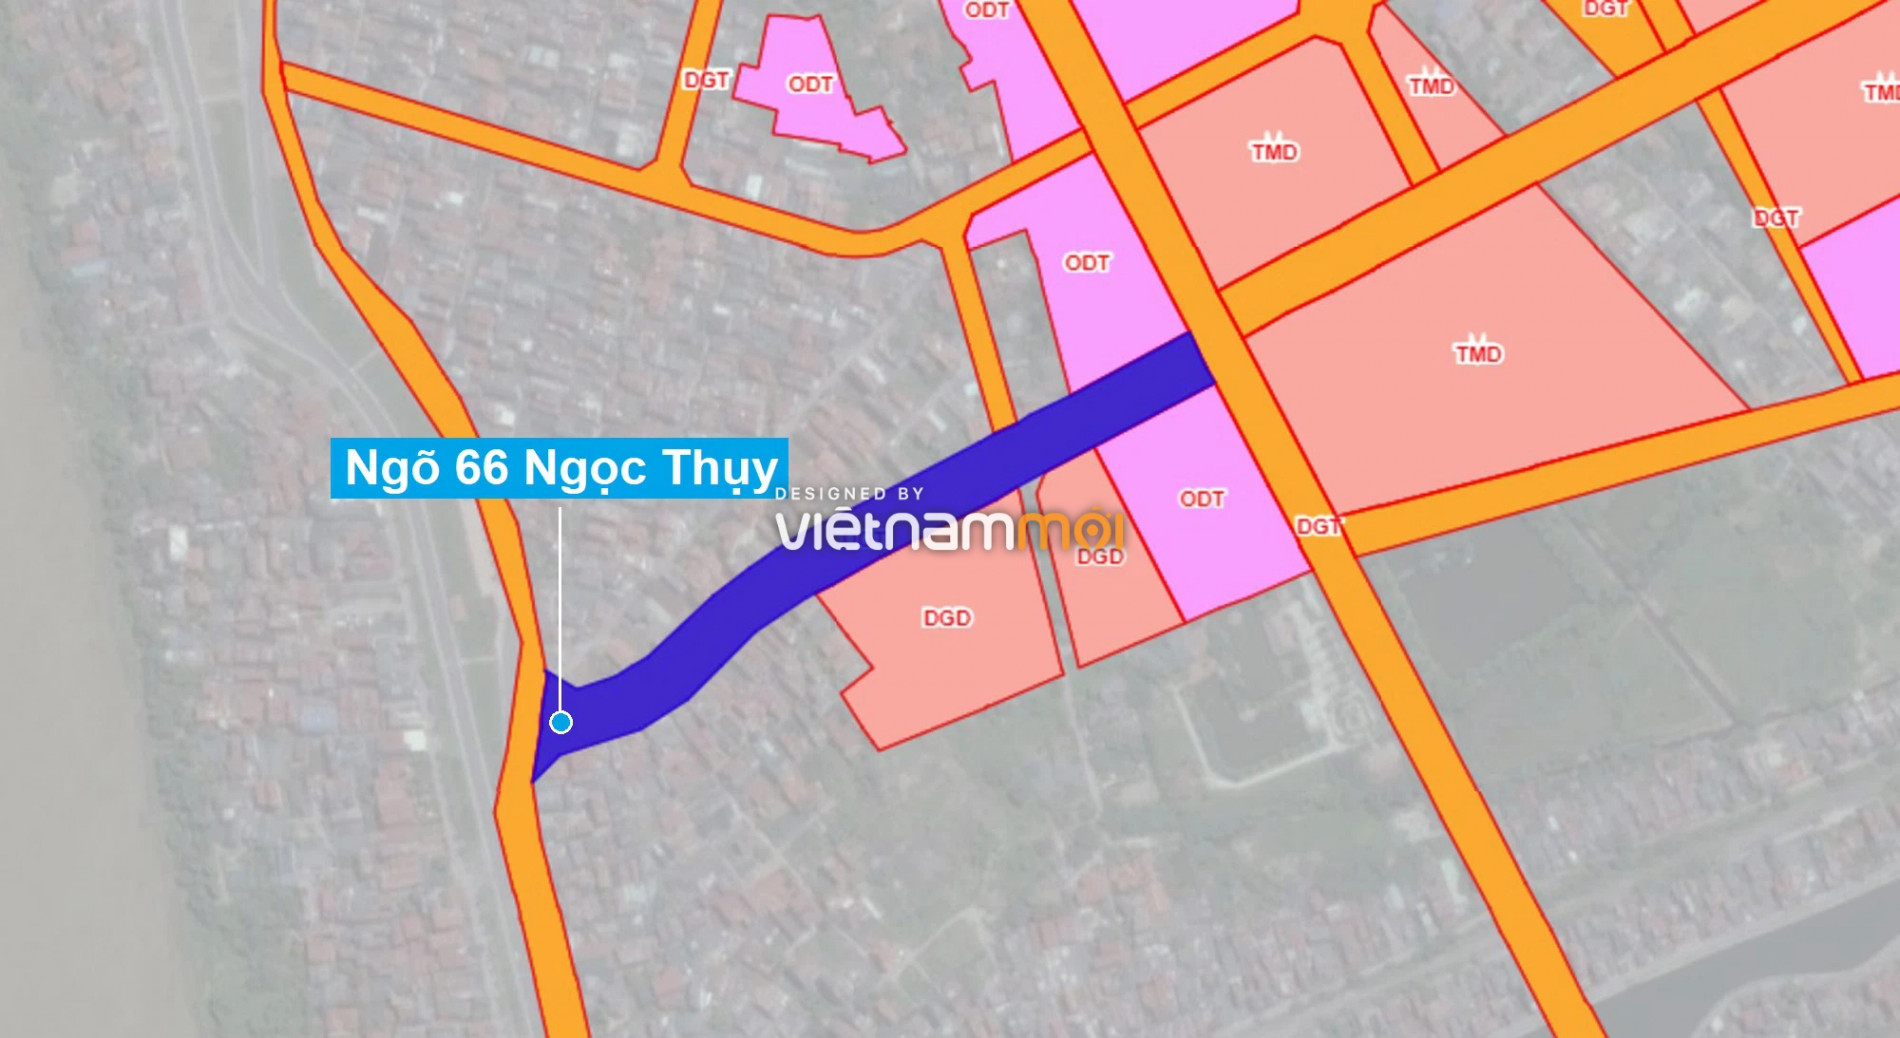 Những khu đất sắp thu hồi để mở đường ở phường Ngọc Thụy, Long Biên, Hà Nội (phần 4) - Ảnh 9.